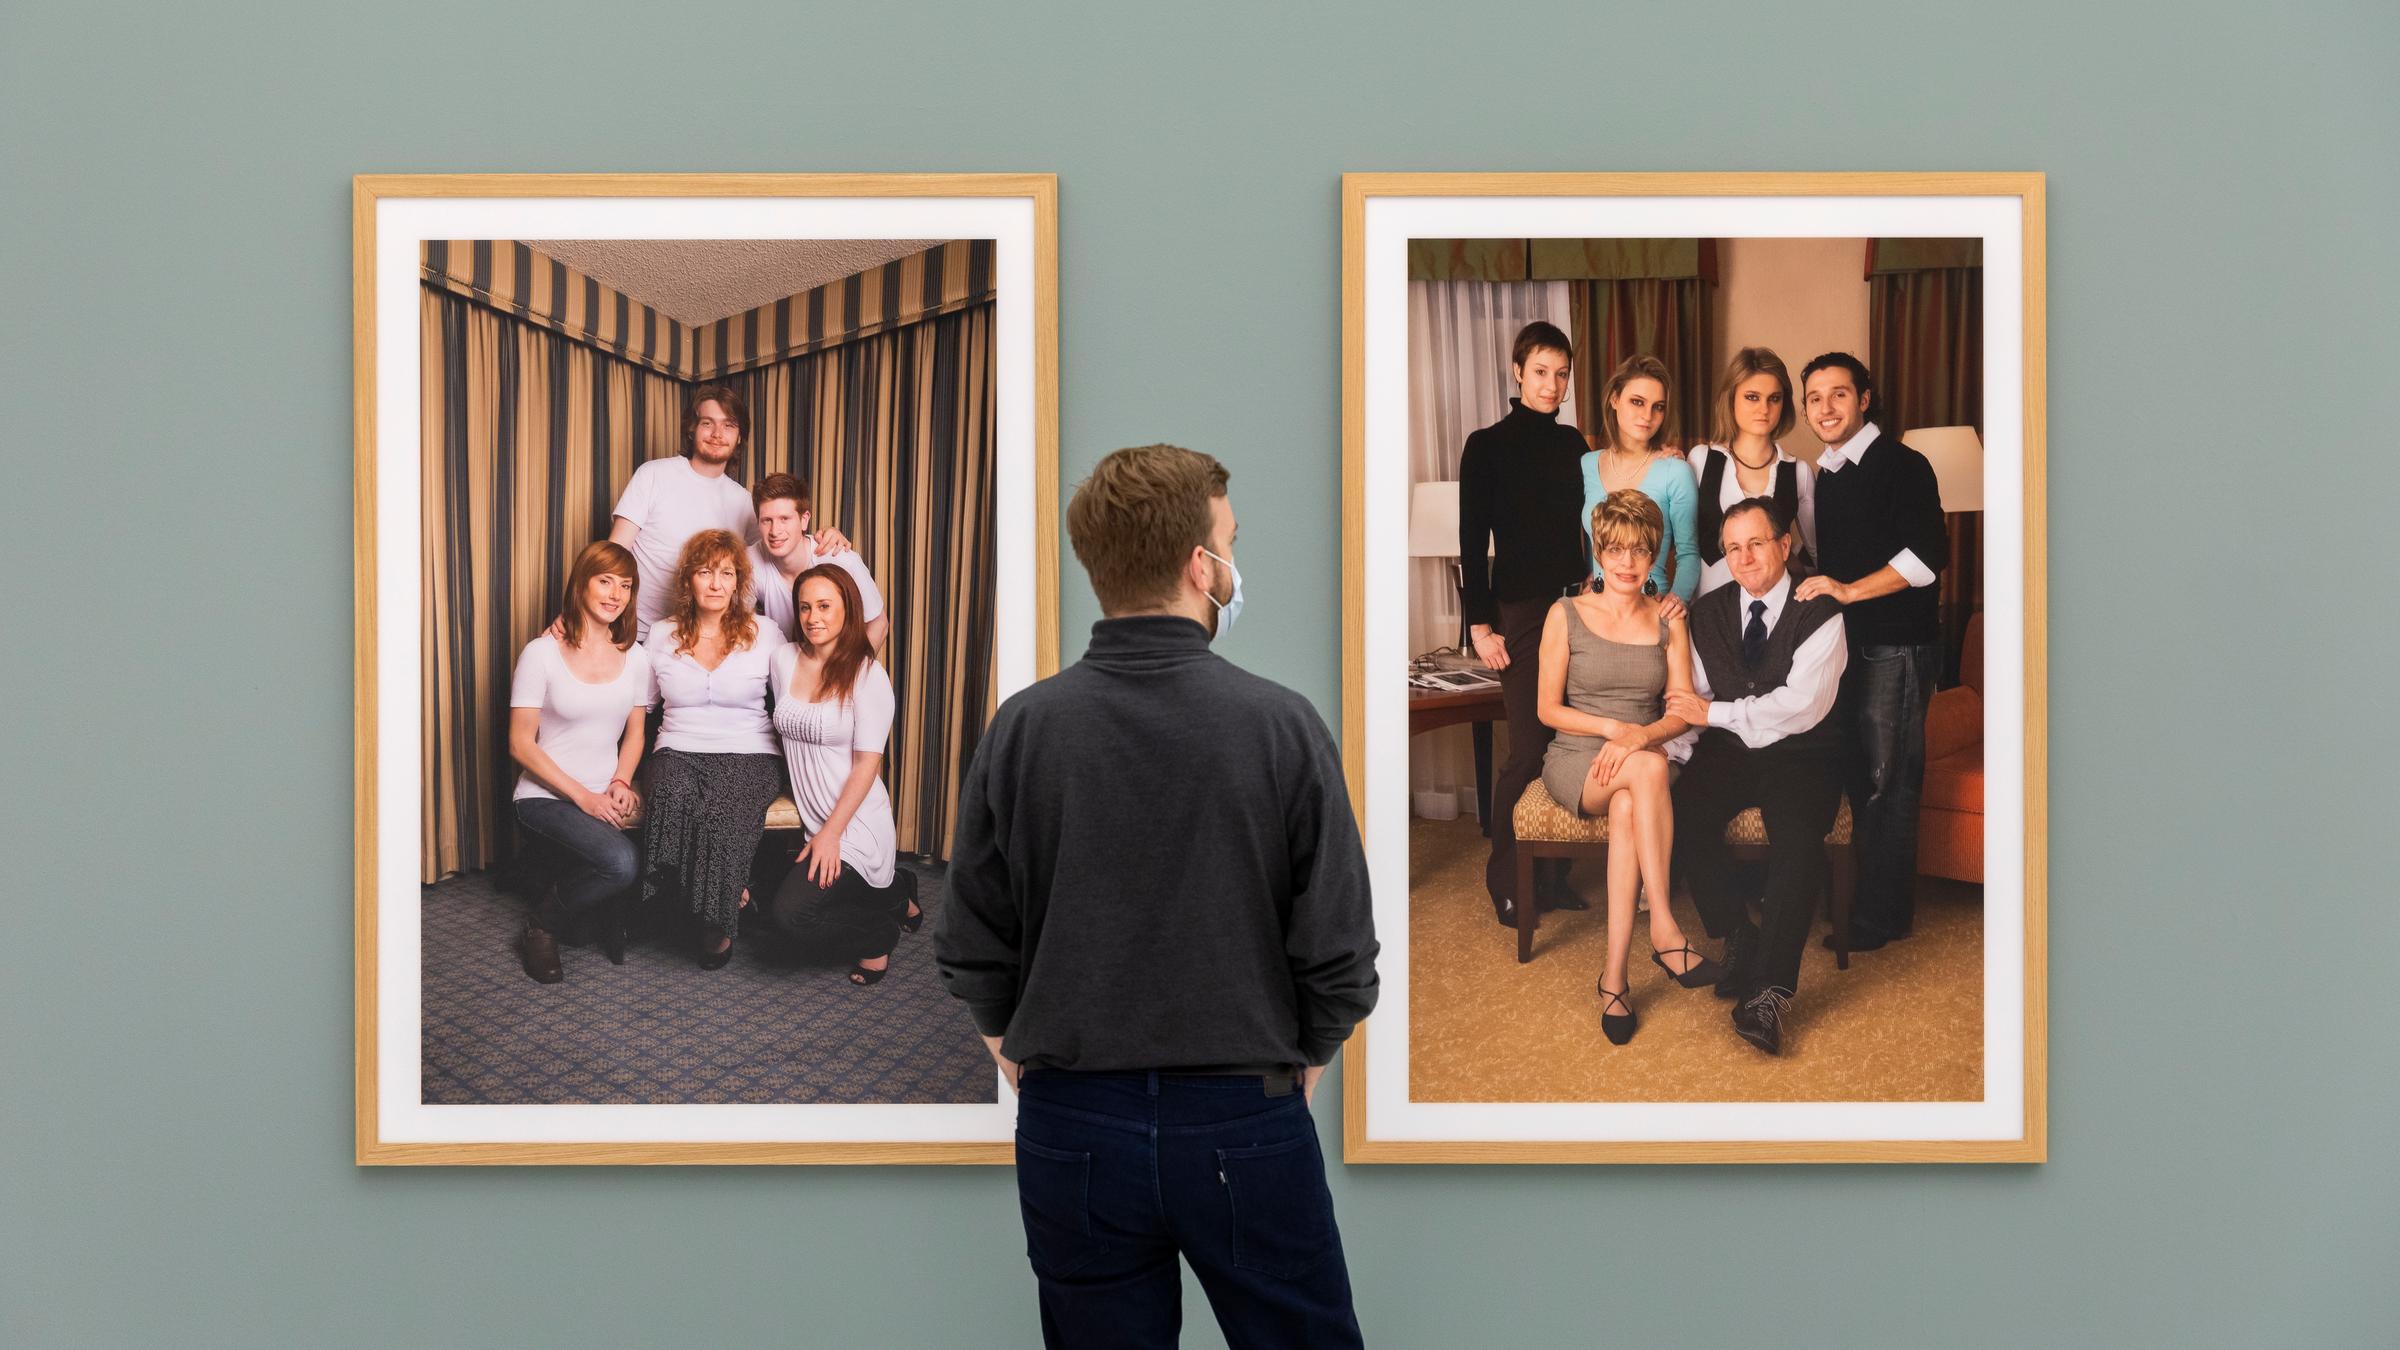 Ein Mann steht in einer Ausstellung vor zwei Fotografien, die jeweils e...</p>

                        <a href=